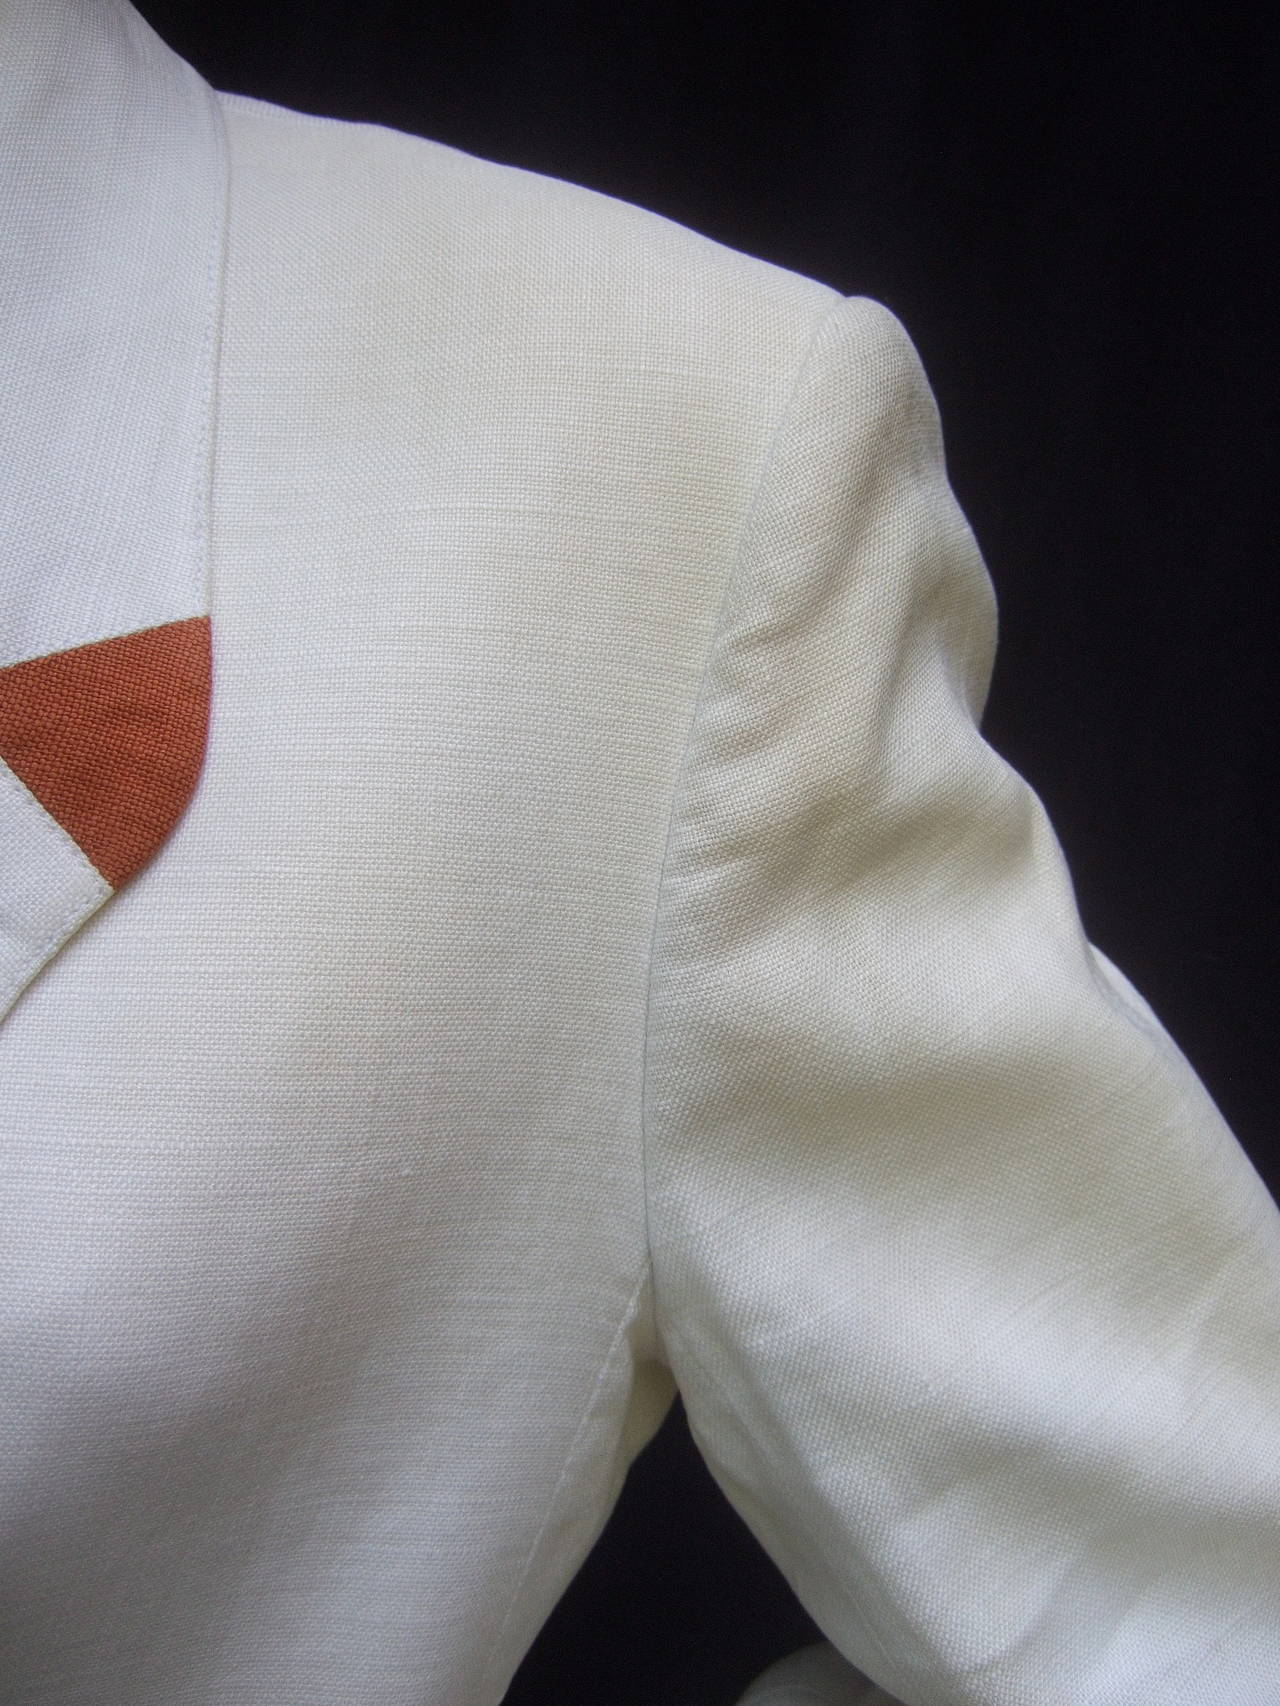 Hermes Paris Crisp White Linen Jacket Made in France c 1980s 3